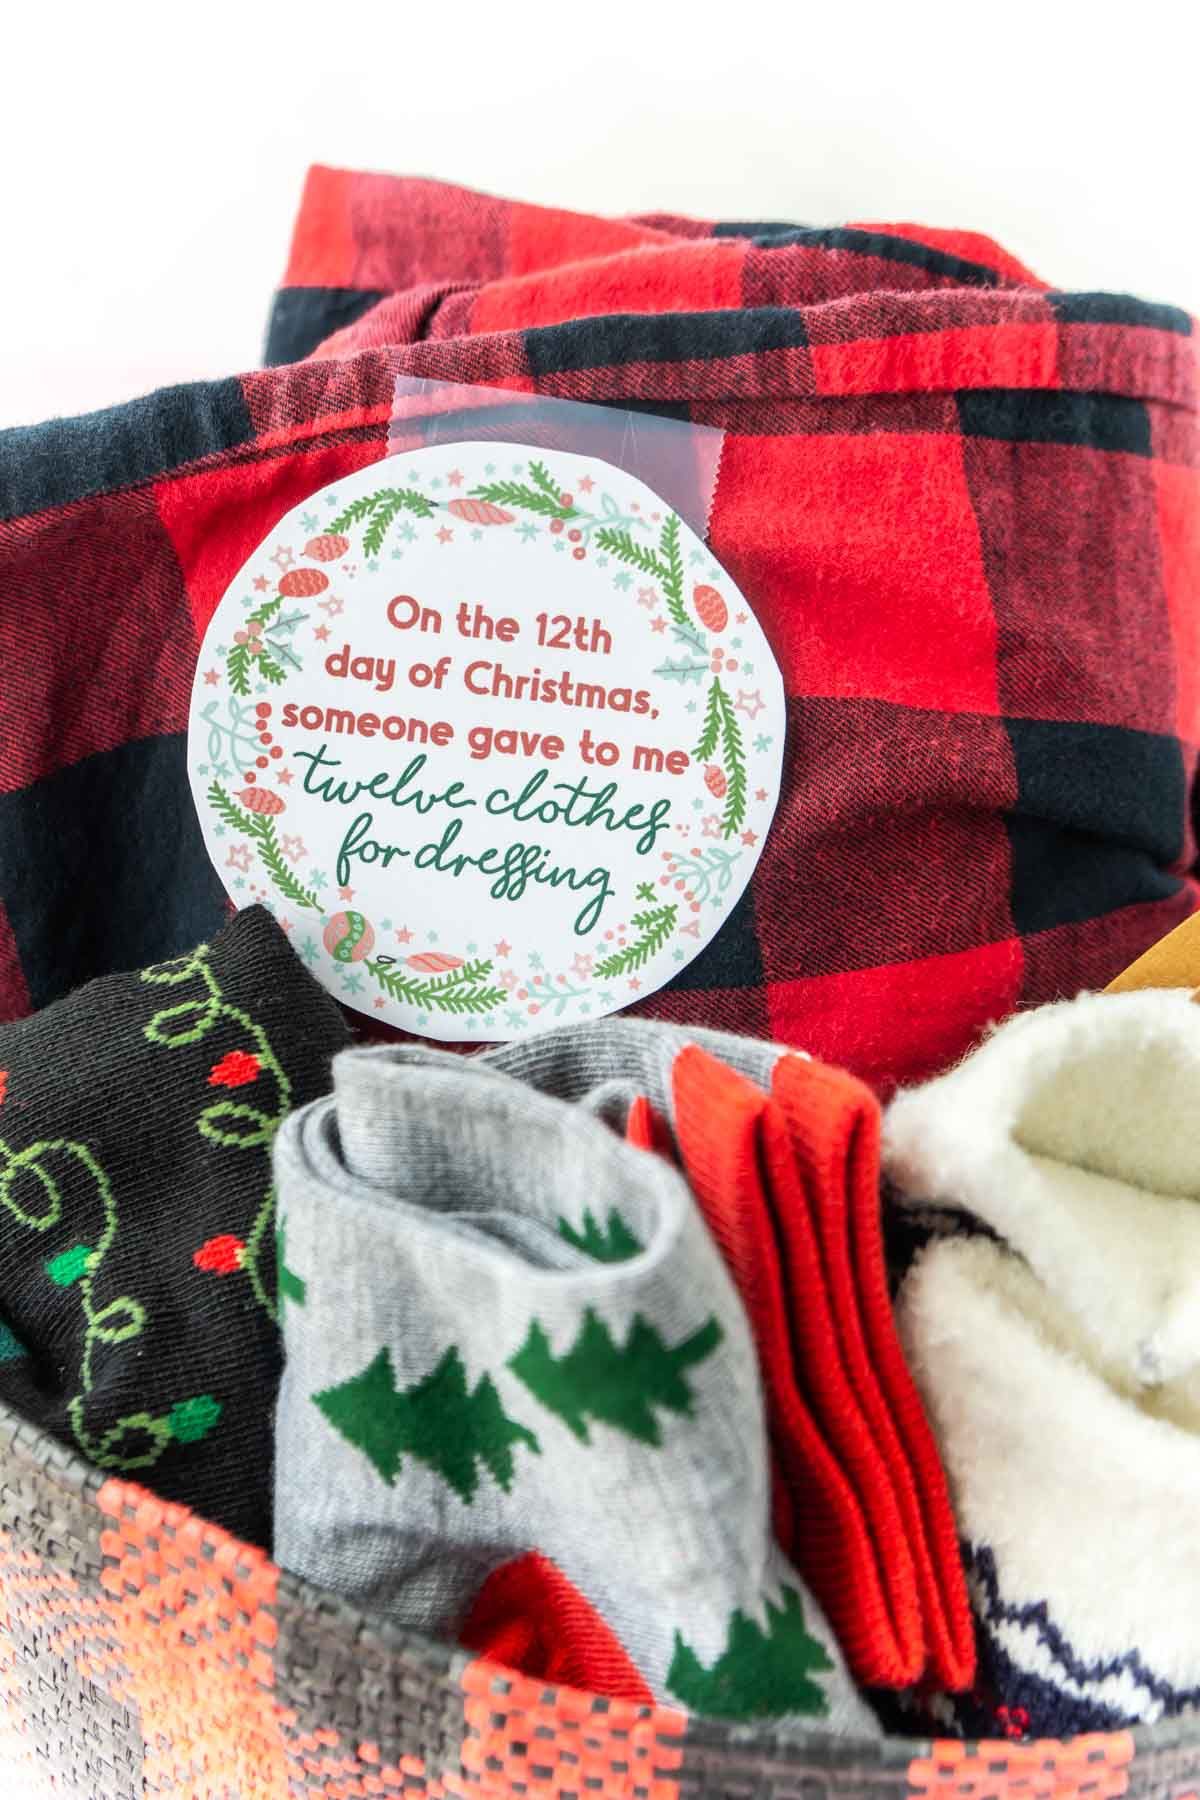 Oblečení v košíku s vytištěnou 12denní vánoční značkou